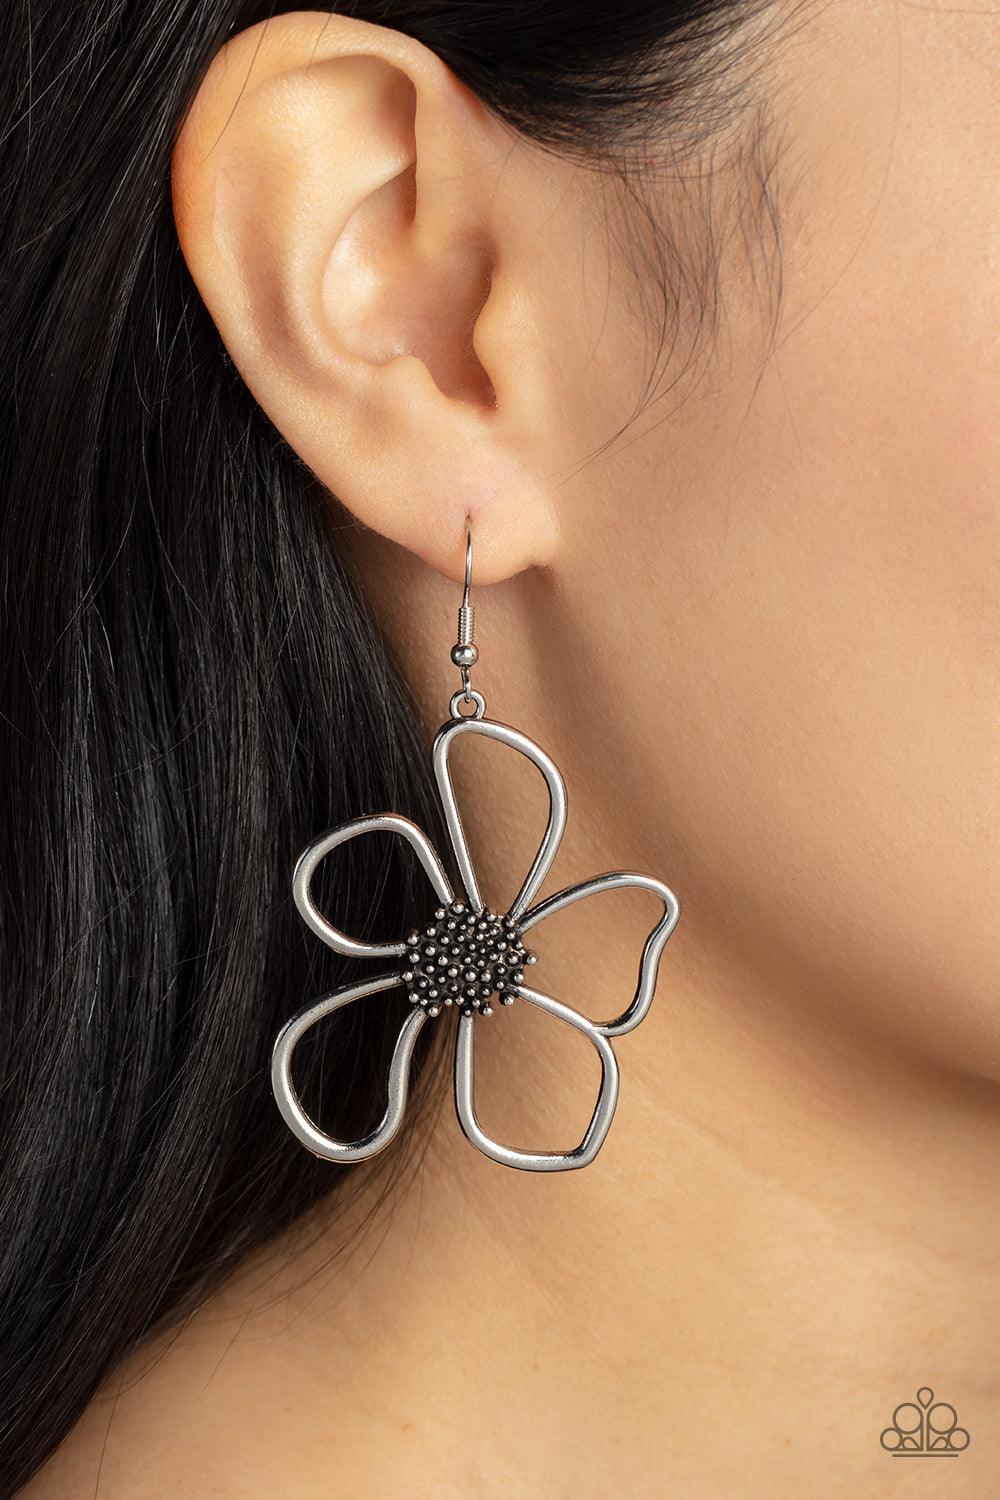 Wildflower Walkway Silver Earrings - Jewelry by Bretta